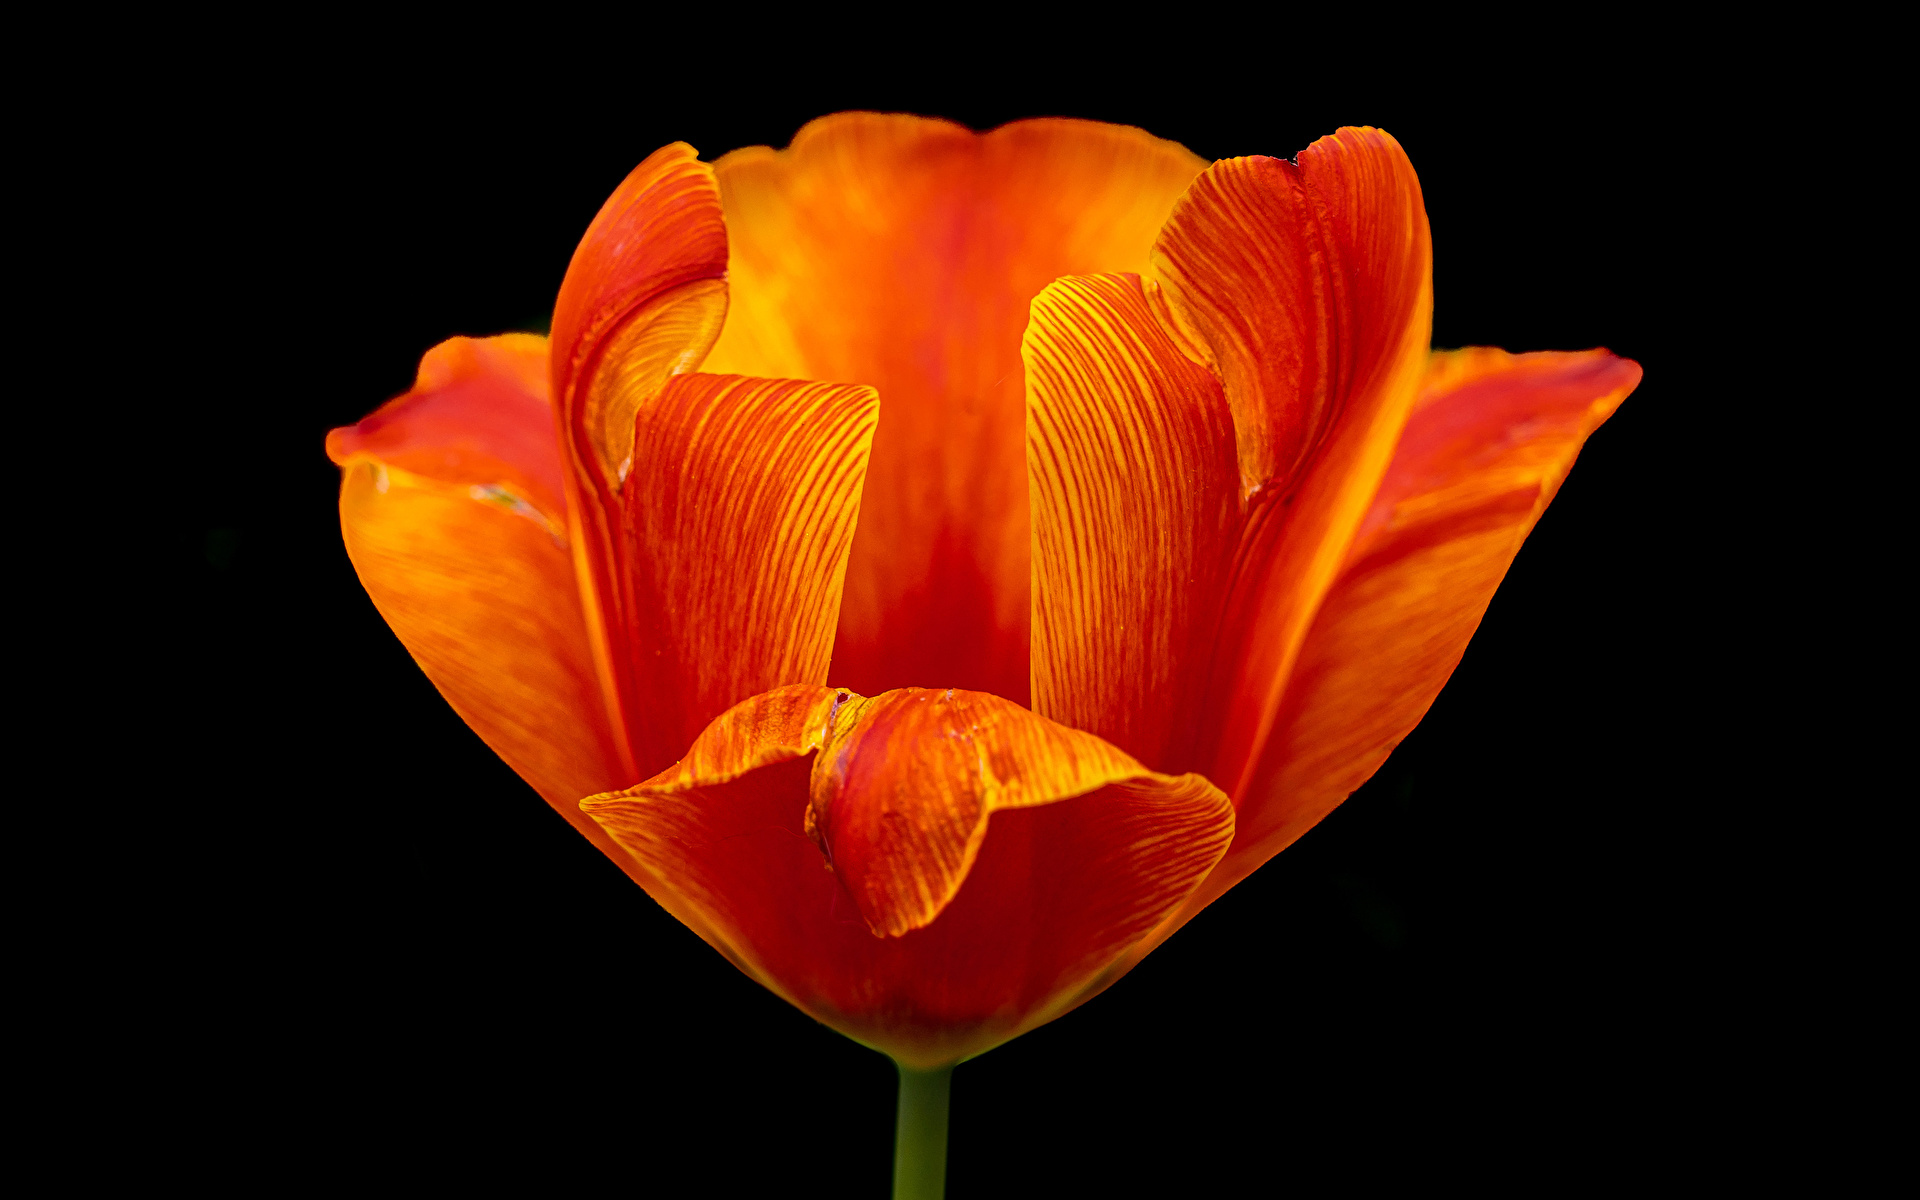 Картинка Тюльпаны оранжевых цветок вблизи Черный фон 1920x1200 тюльпан оранжевая оранжевые Оранжевый Цветы на черном фоне Крупным планом